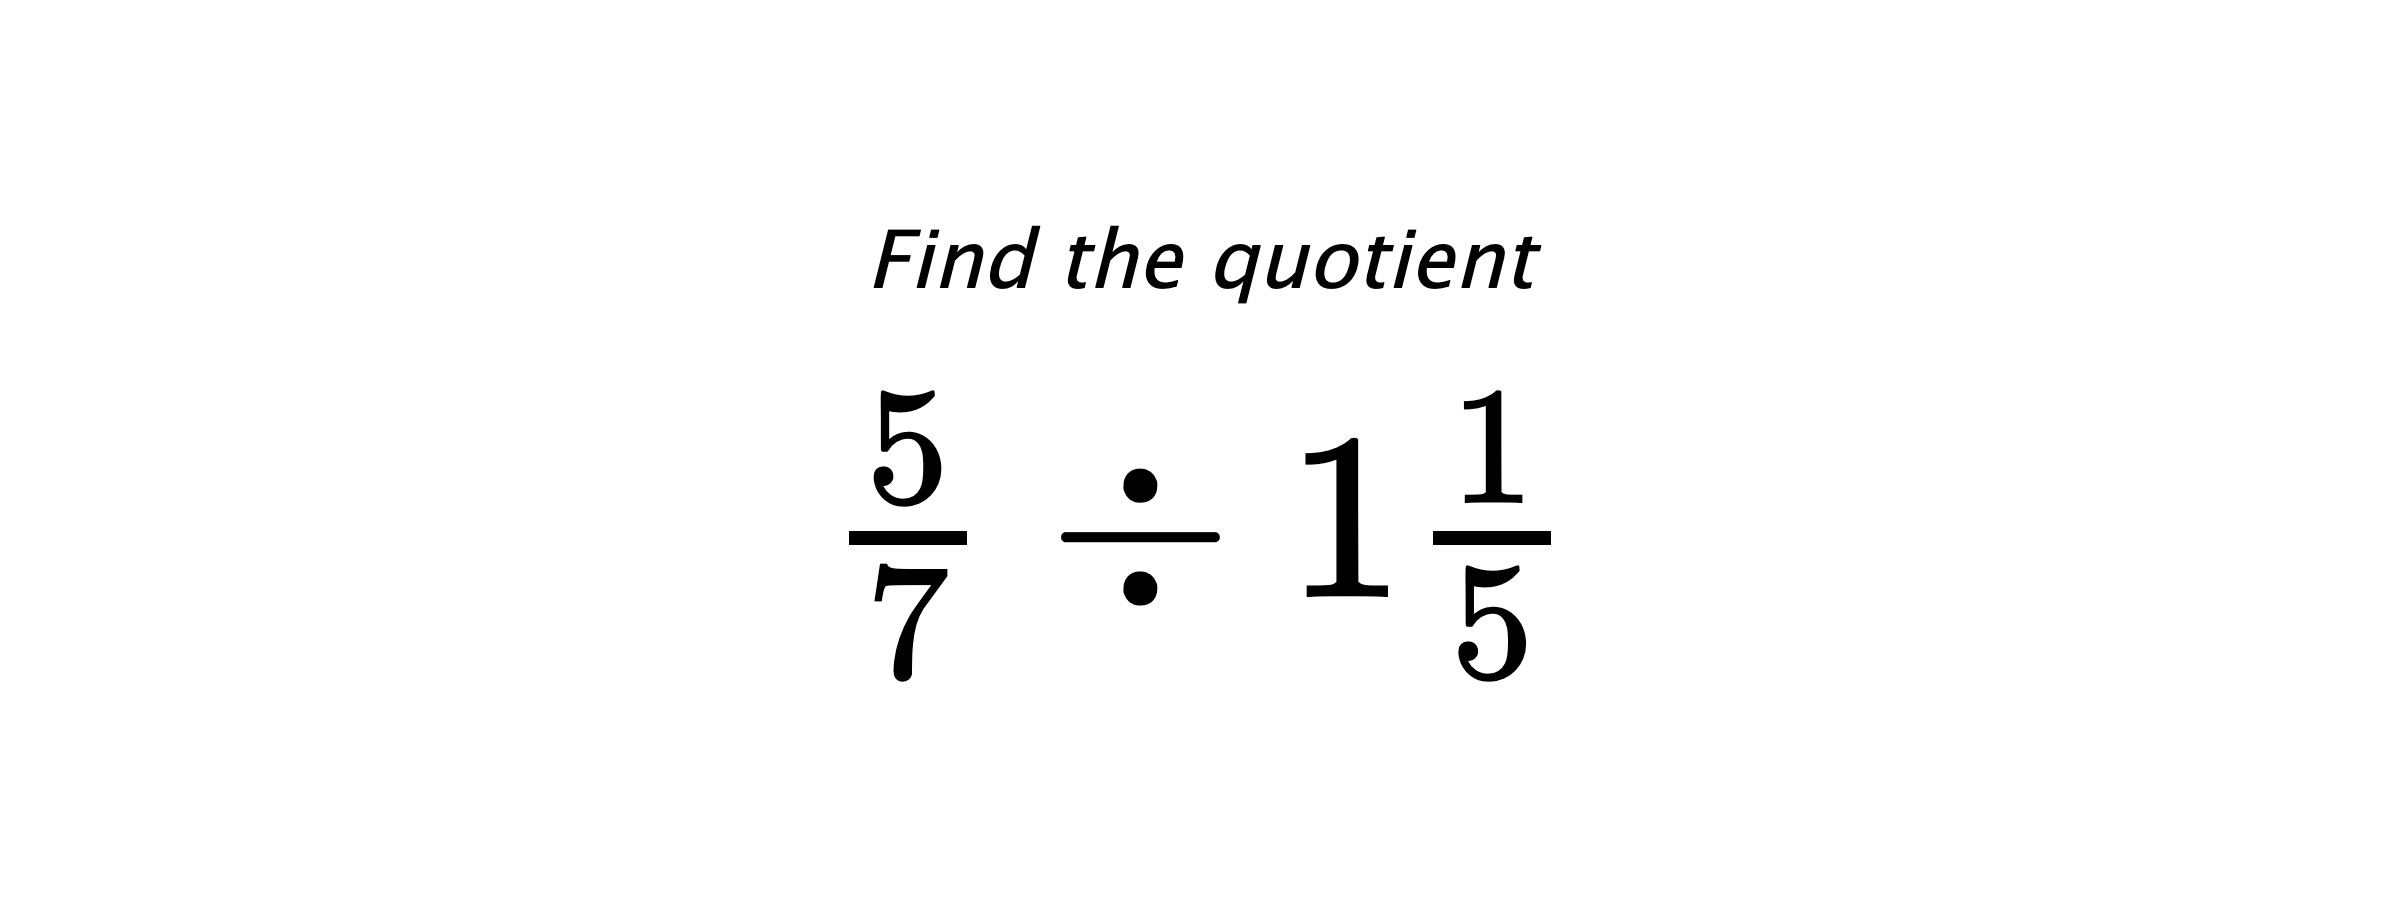 Find the quotient $ \frac{5}{7} \div 1\frac{1}{5} $